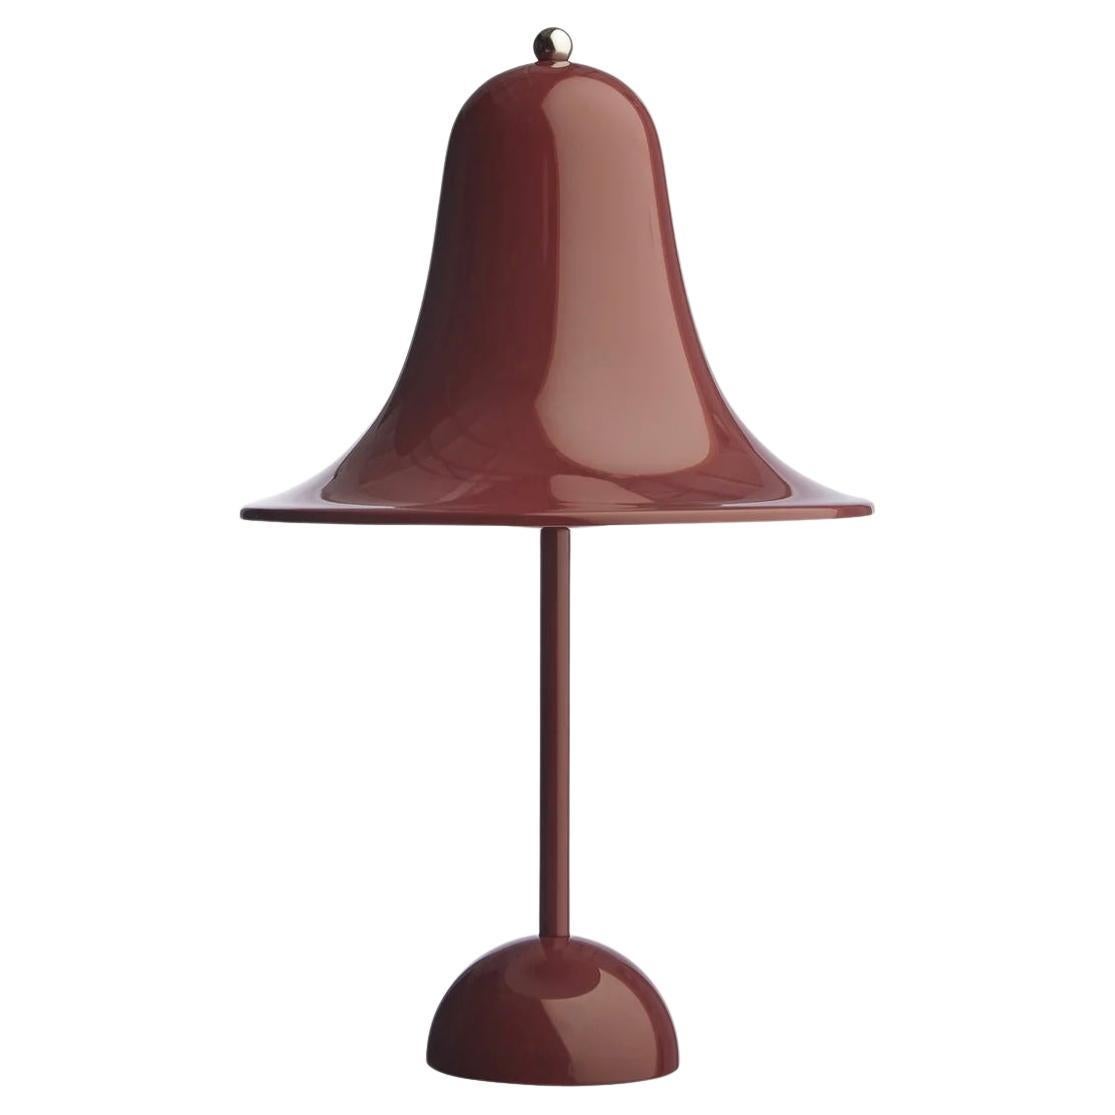 Verner Panton 'Pantop' Table Lamp in 'Burgundy' 1980 for Verpan For Sale